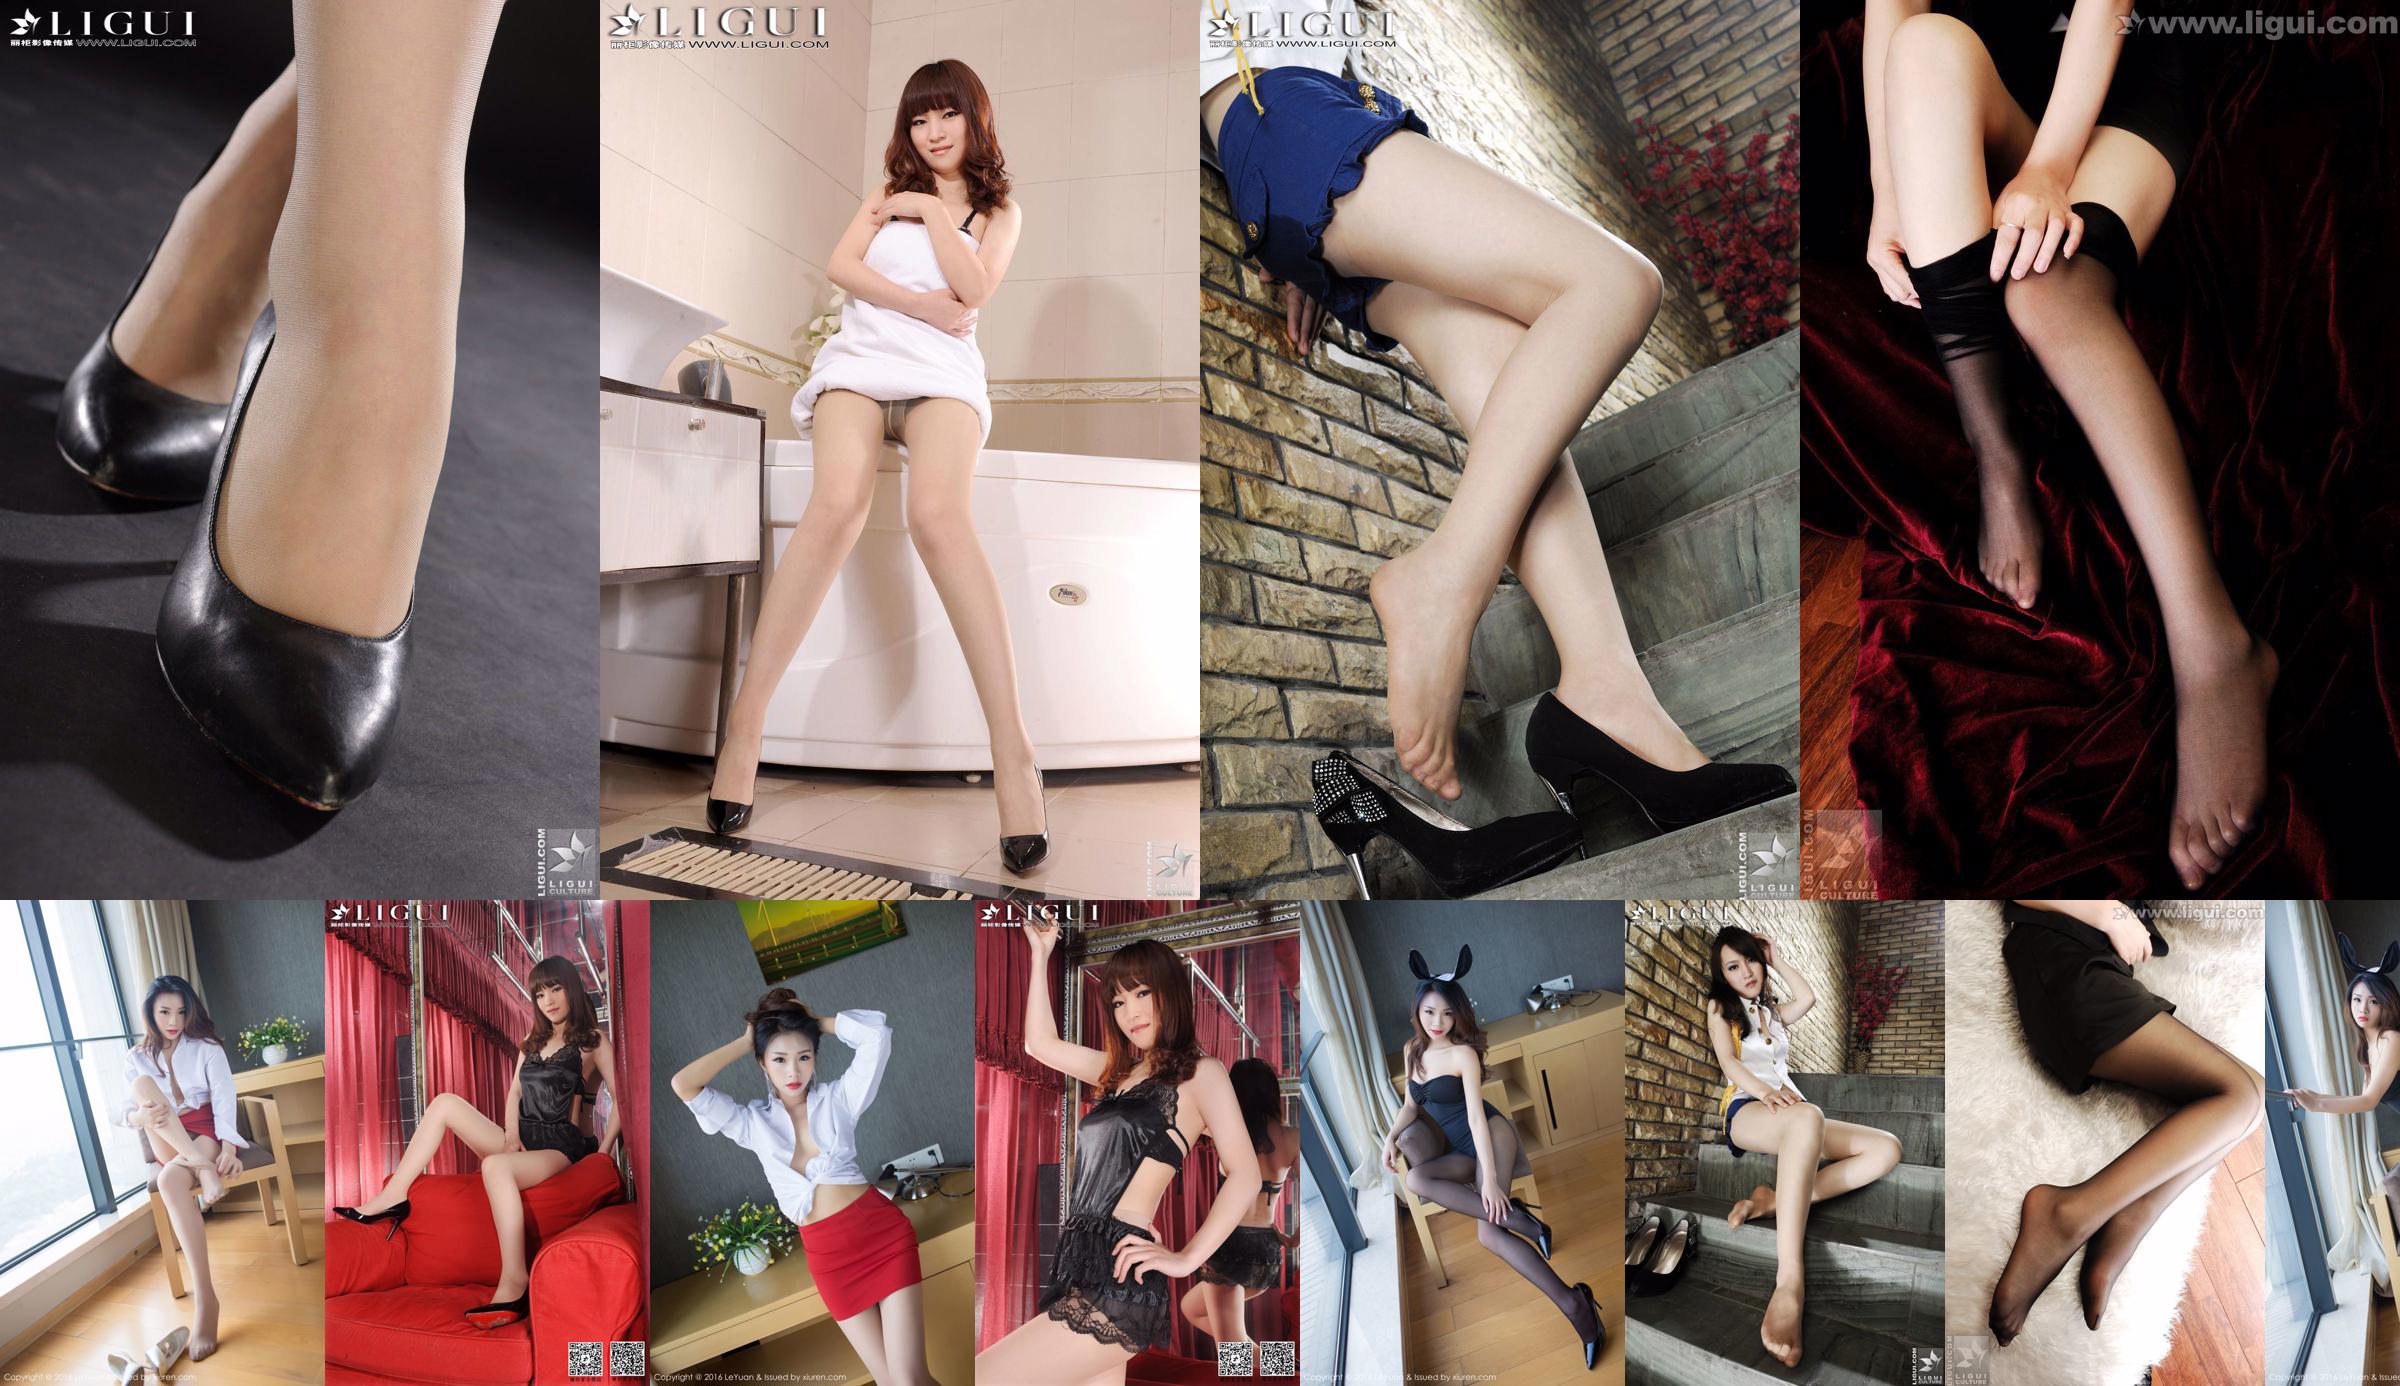 Model Tina "Lace Dudou + Meat Stockings Feet" Complete Works [丽 柜 贵 足 LiGui] Piękne nogi i jadeitowe stopy zdjęcia zdjęcia No.596342 Strona 2